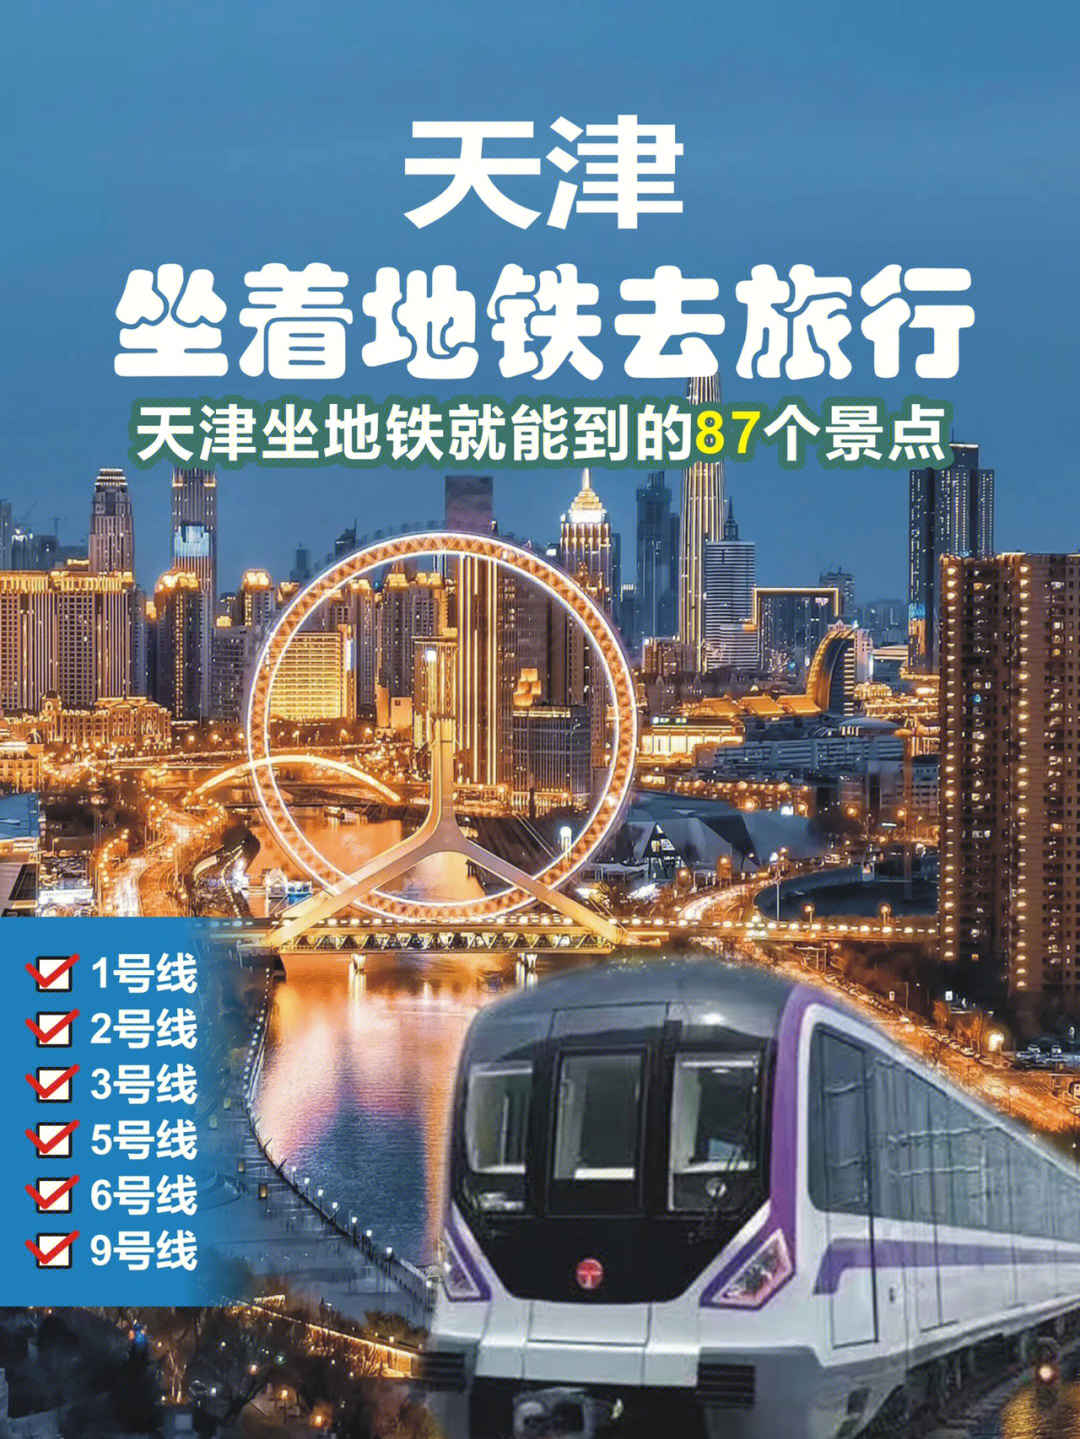 天津地铁能够到达的87个景区